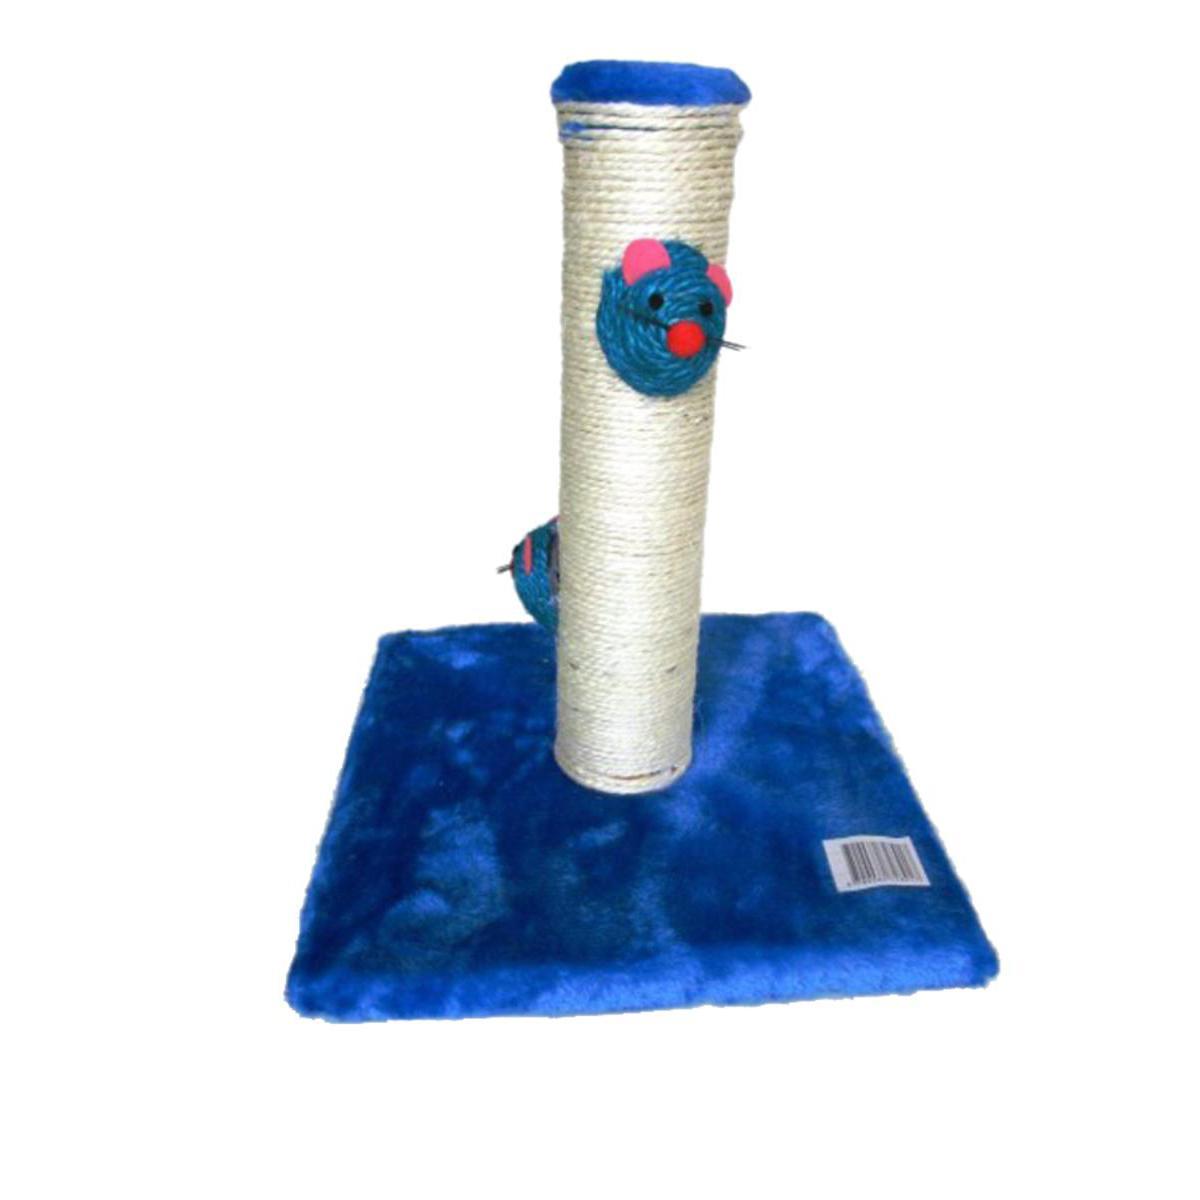 Arbre à chat - Carton, sisal, tissu et bois - Hauteur 34 cm - Beige et bleu